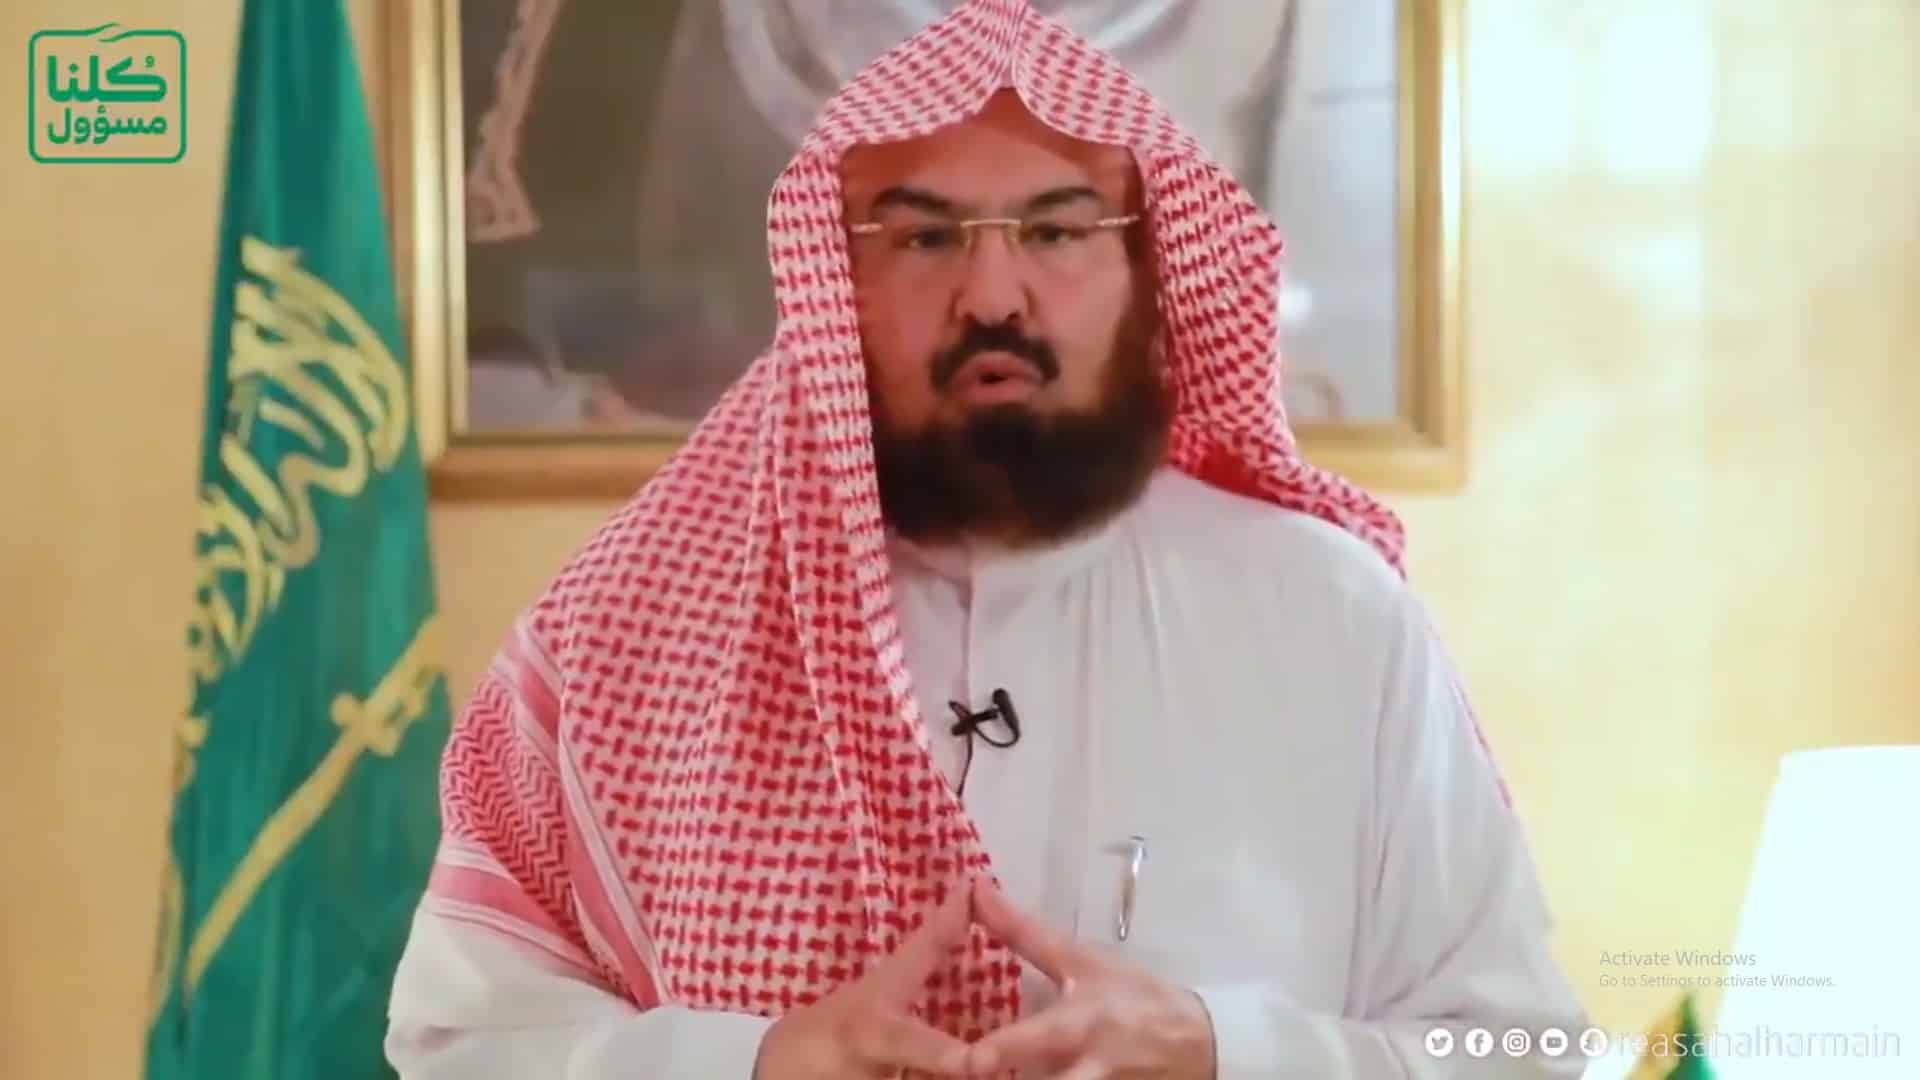 السديس يطلق مبادرة “جميعًا حذرون”.. تستهدف زوار المسجد النبوي والعاملين